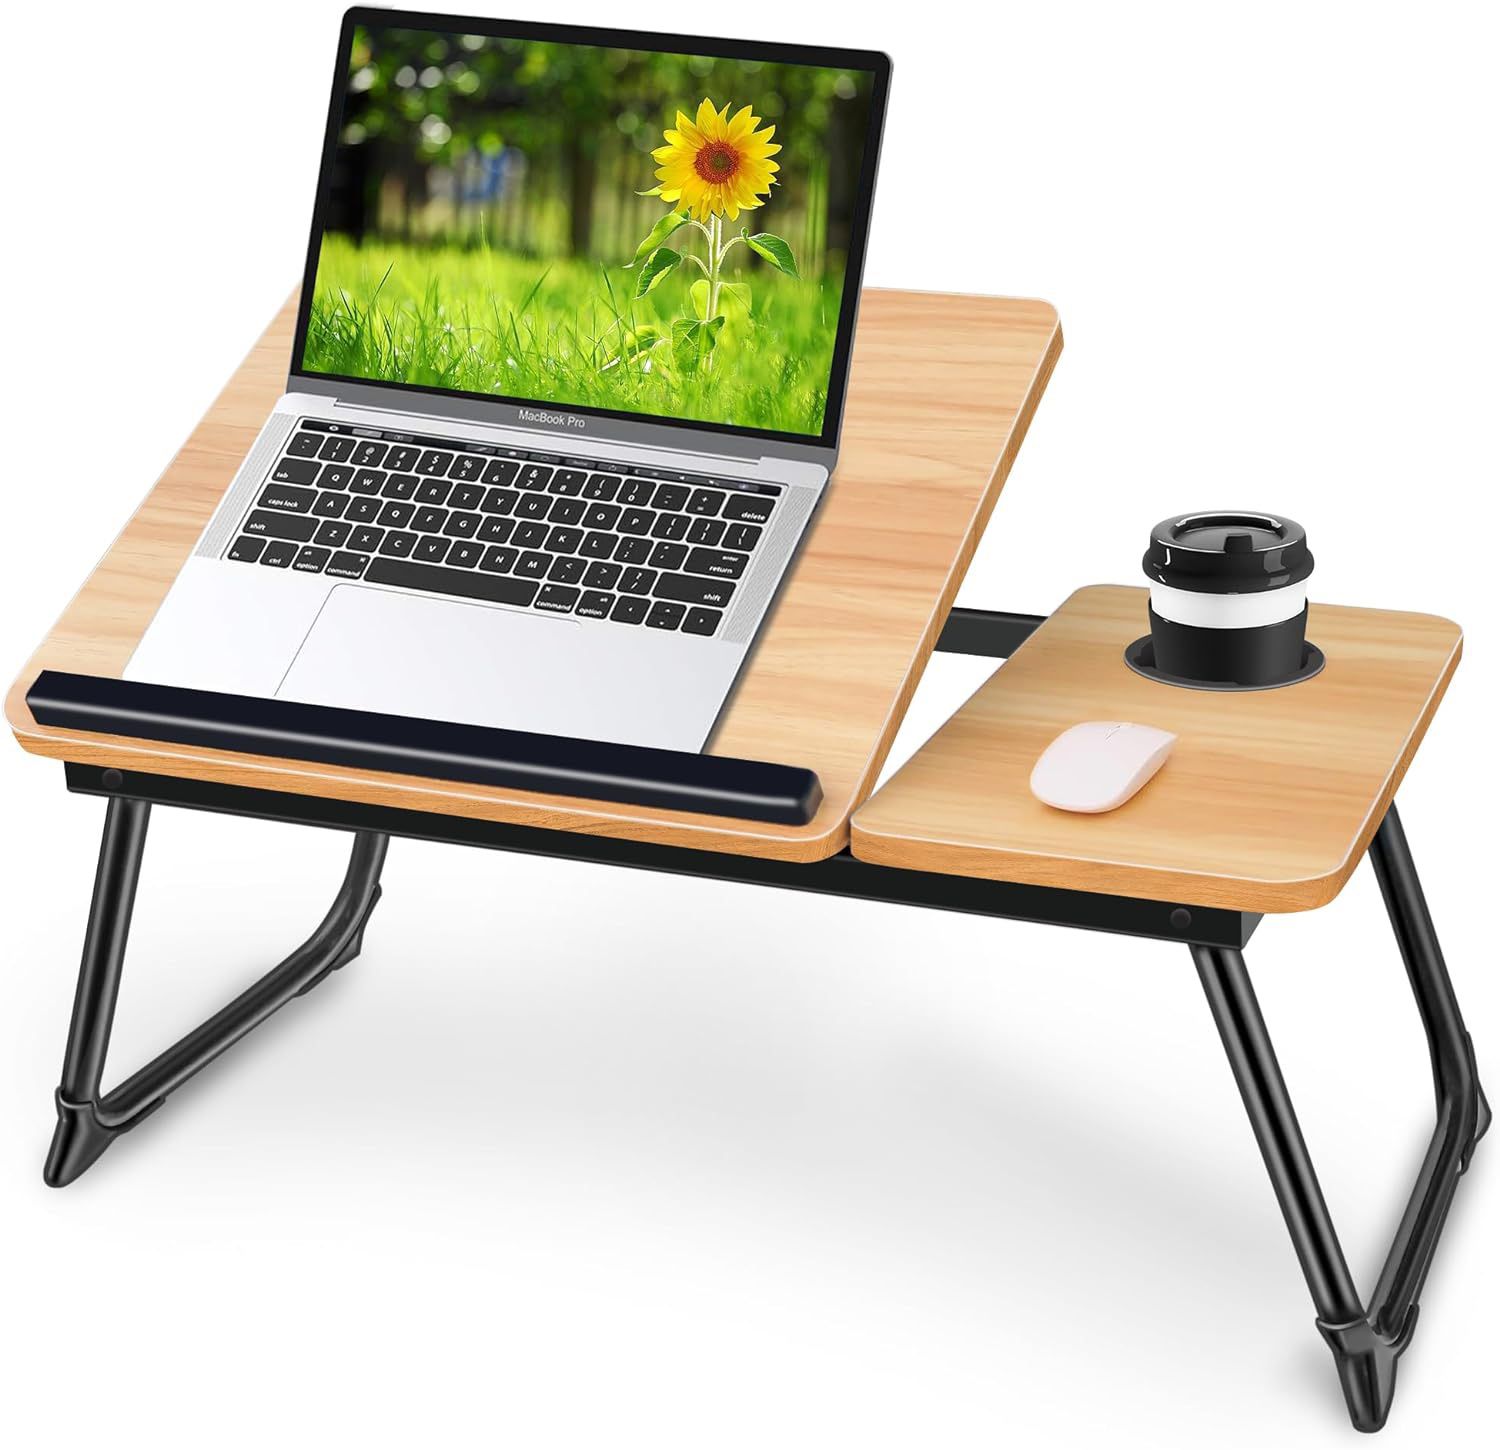 EYdoter 3.9 Adjustable Laptop Desk for Bed,Bed Table for Laptop, Laptop Stand for Bed,Lap Desk for Laptop,Foldable Bed Desk for Laptop and Writing, Po